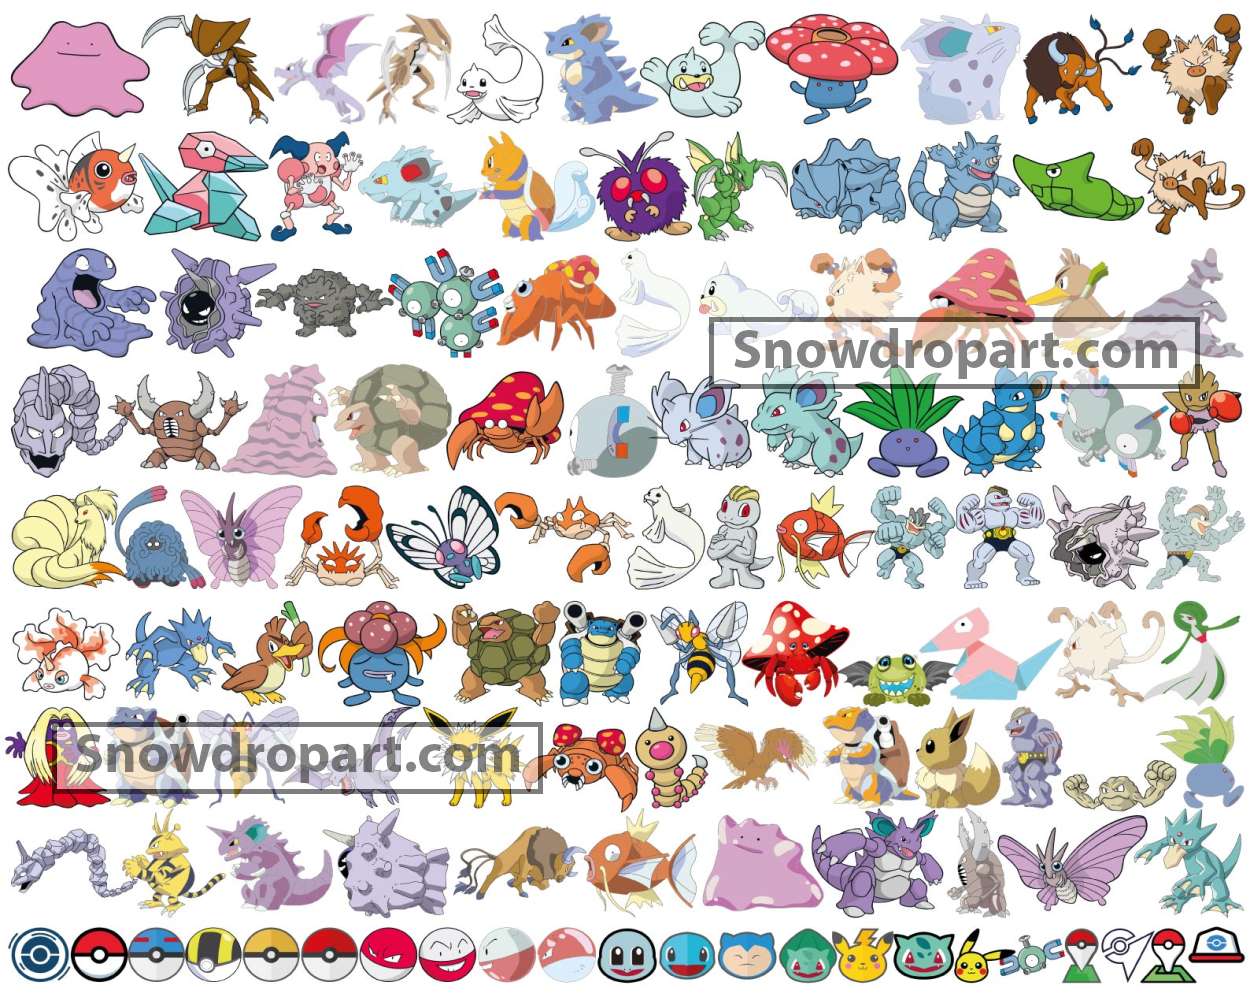 Pokemon Go account lv38 | 416 100iv Pokemon | Shiny Legendary | PGSHARP |  Ipogo